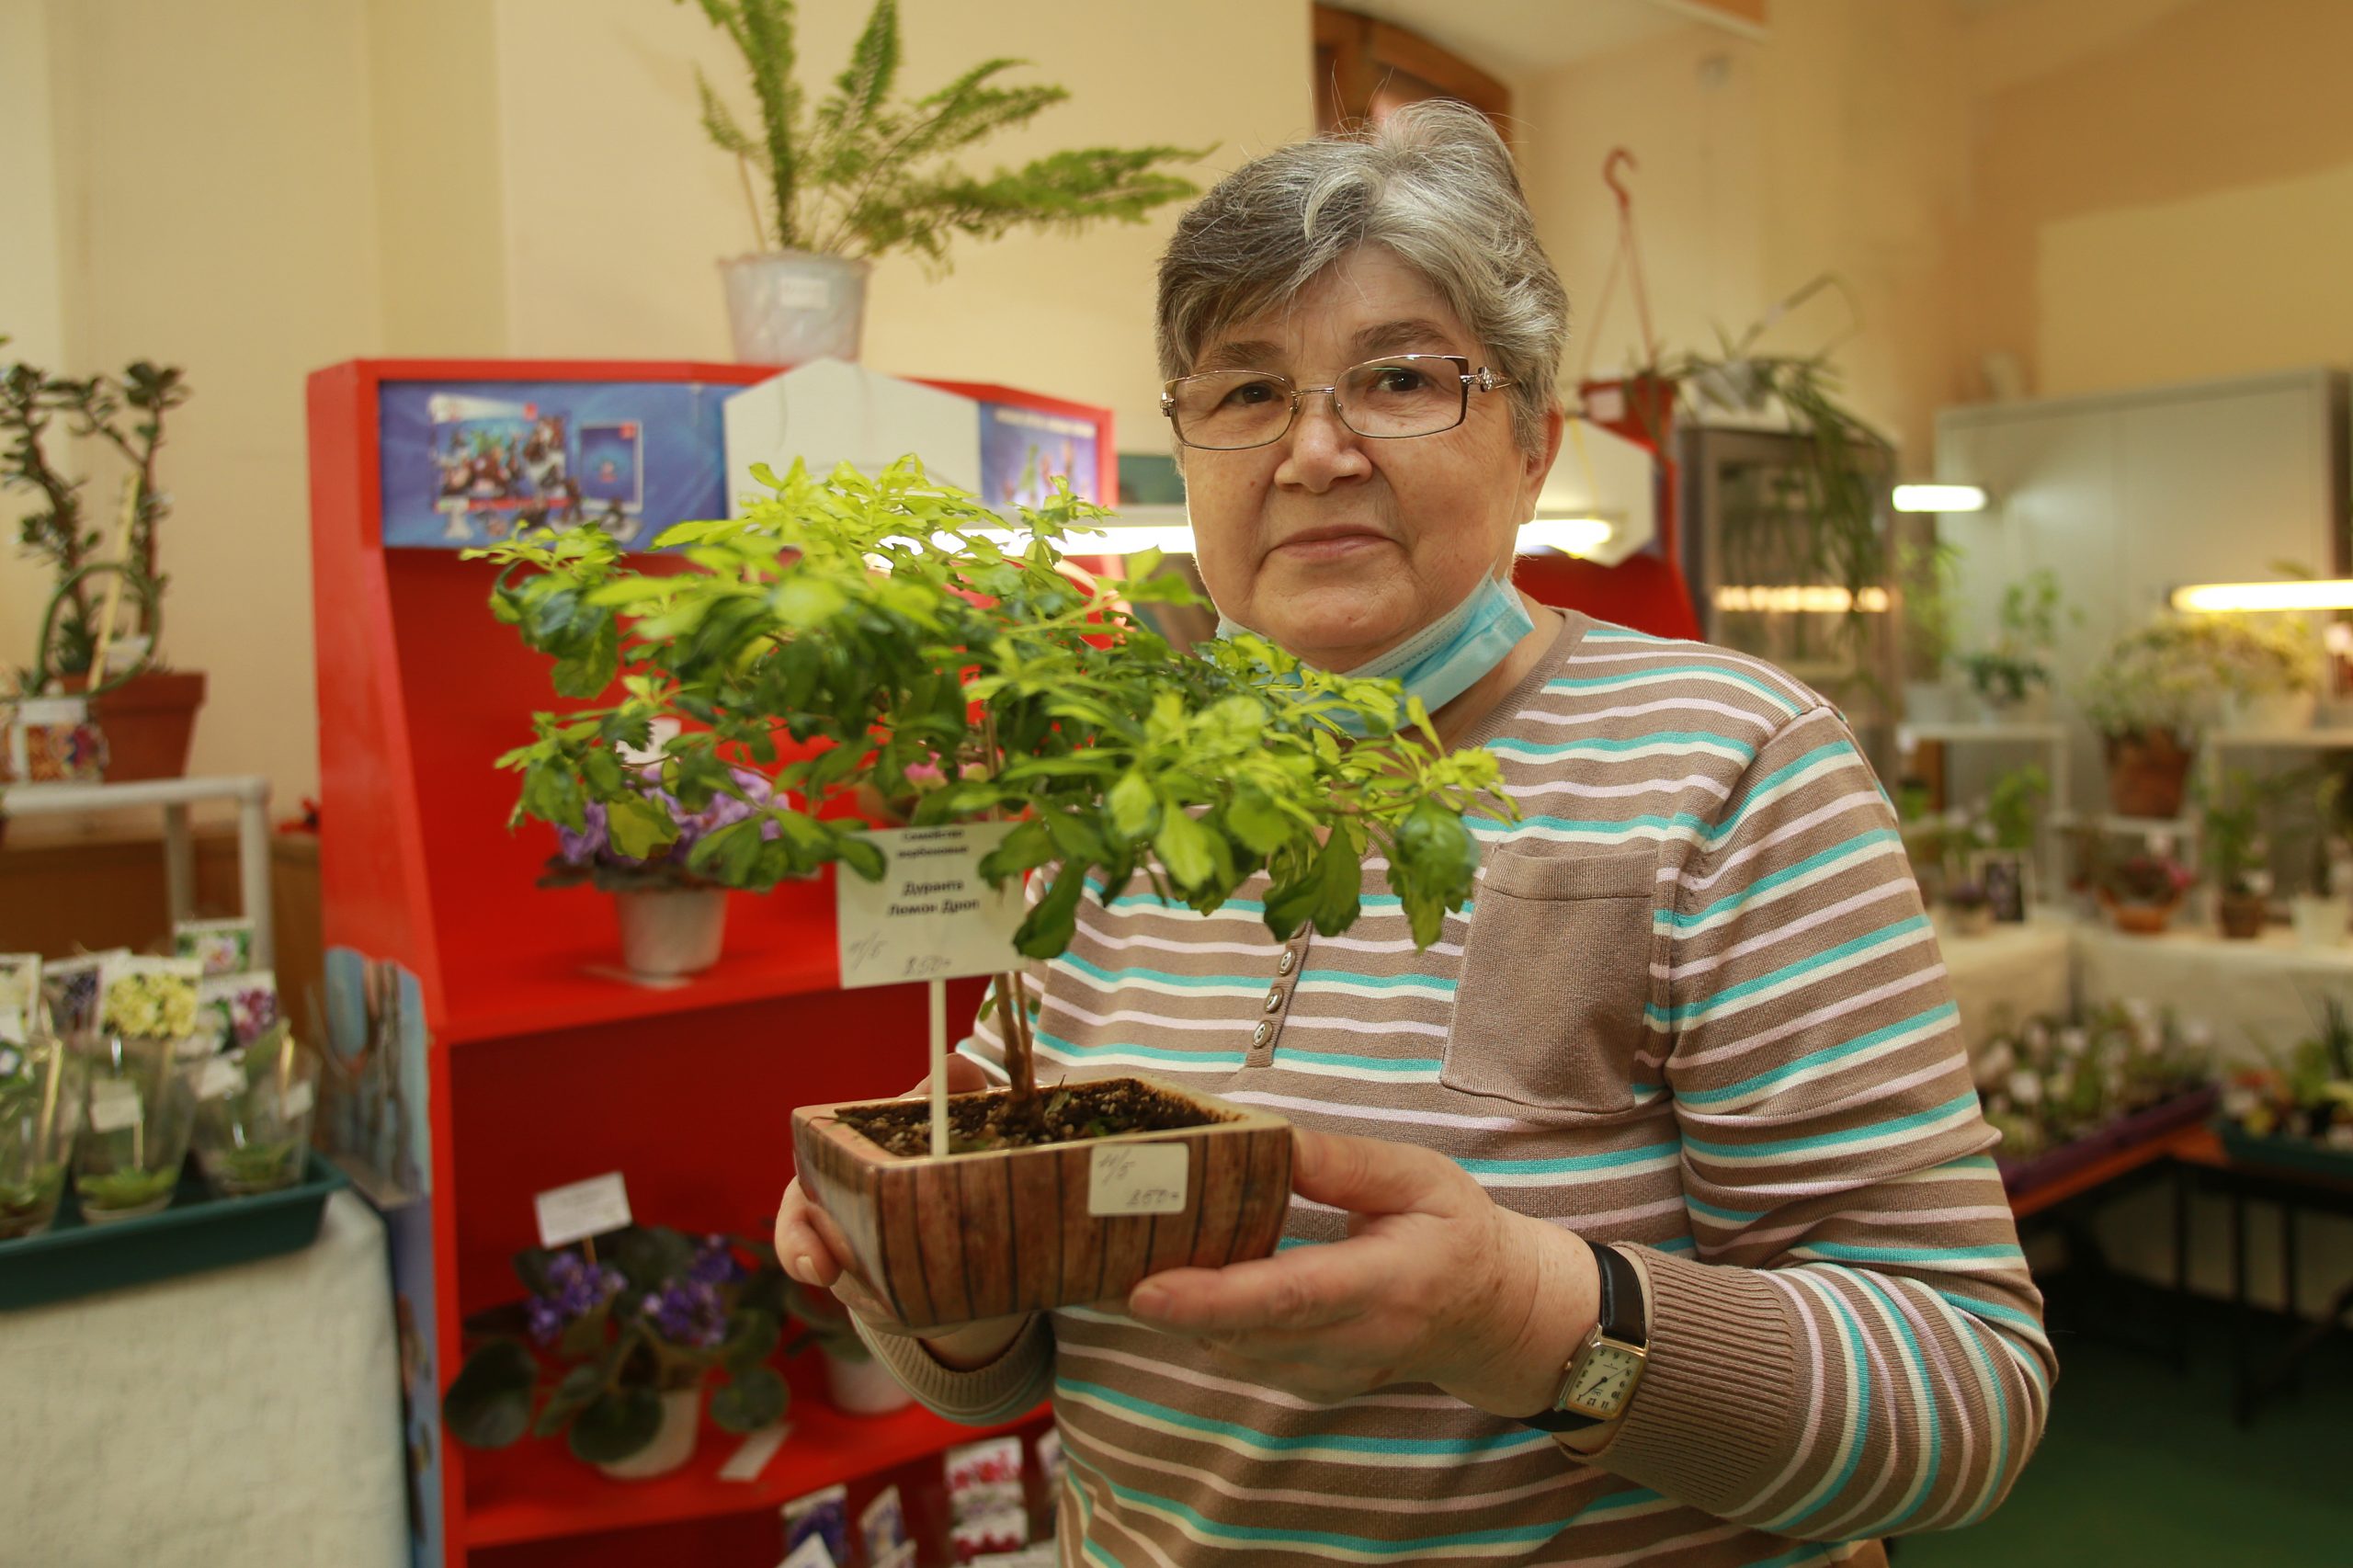 25 марта 2021 года. Участница клуба комнатных растений Татьяна Блинкина показывает растение дуранта, которым можно украсить балкон. Фото: Наталия Нечаева